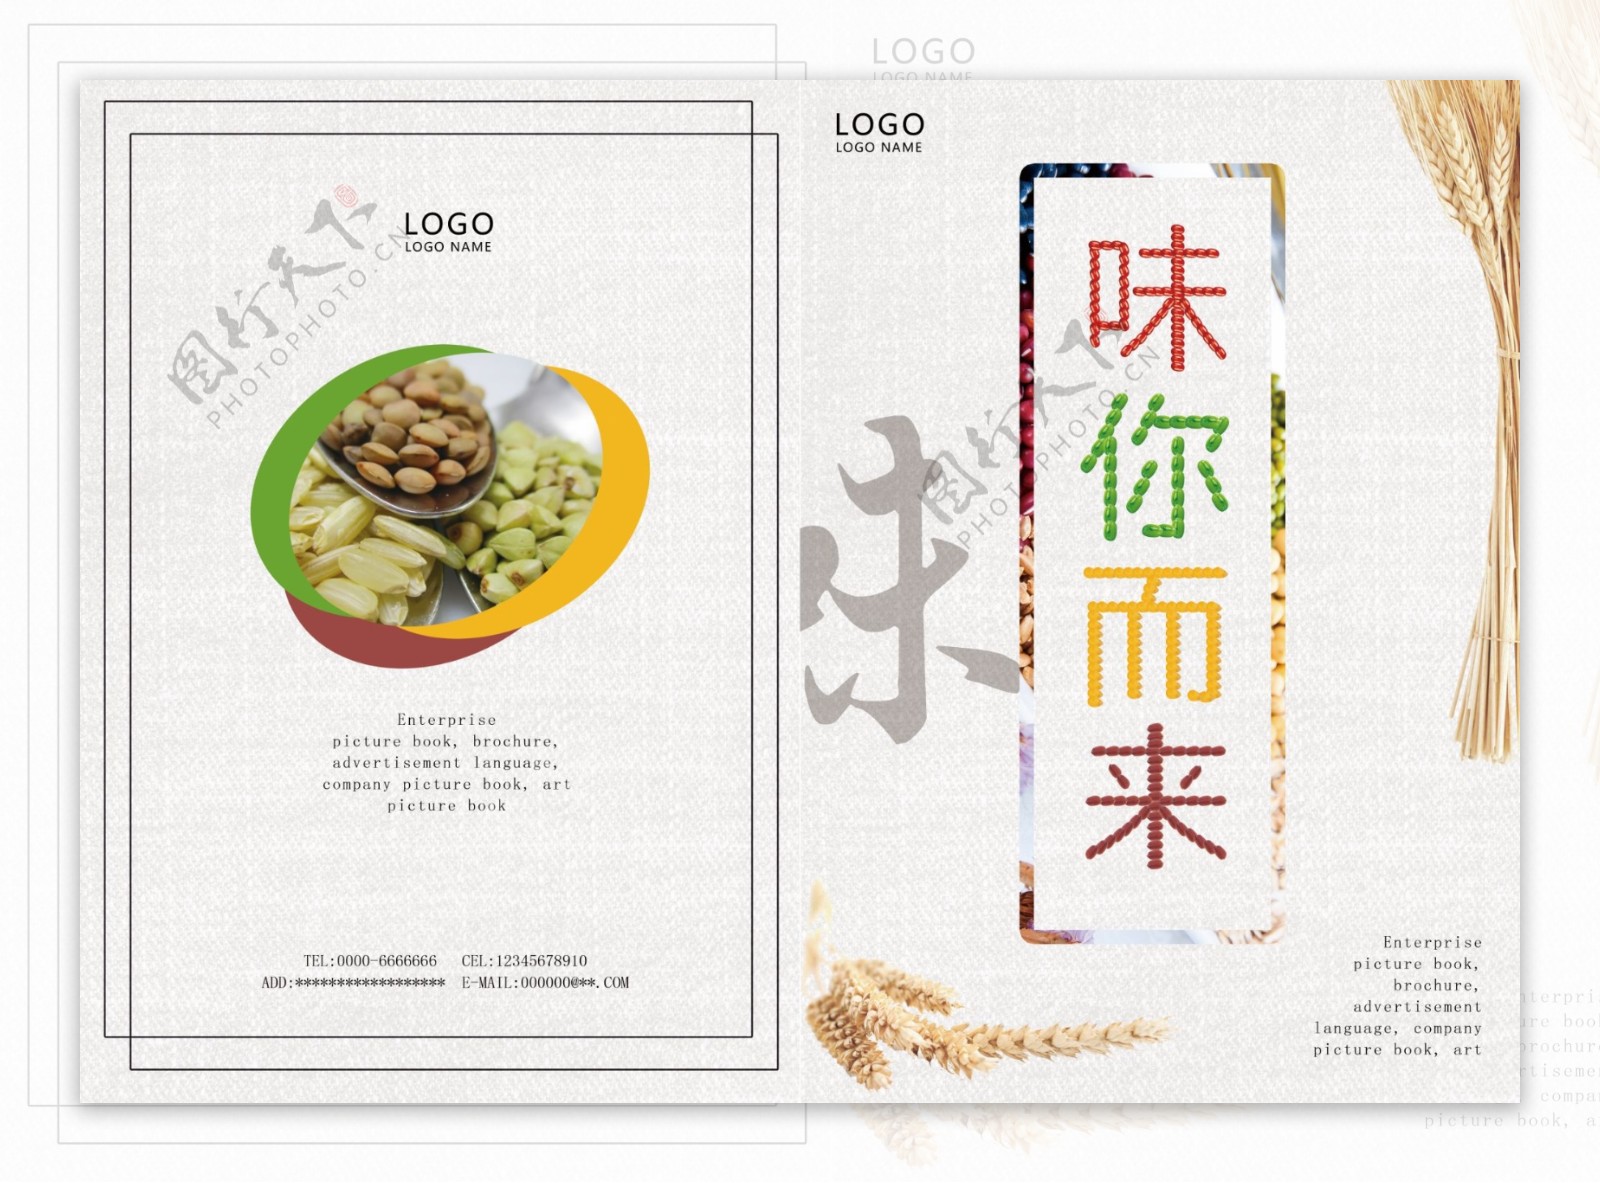 创意中国风五谷杂粮美食画册封面